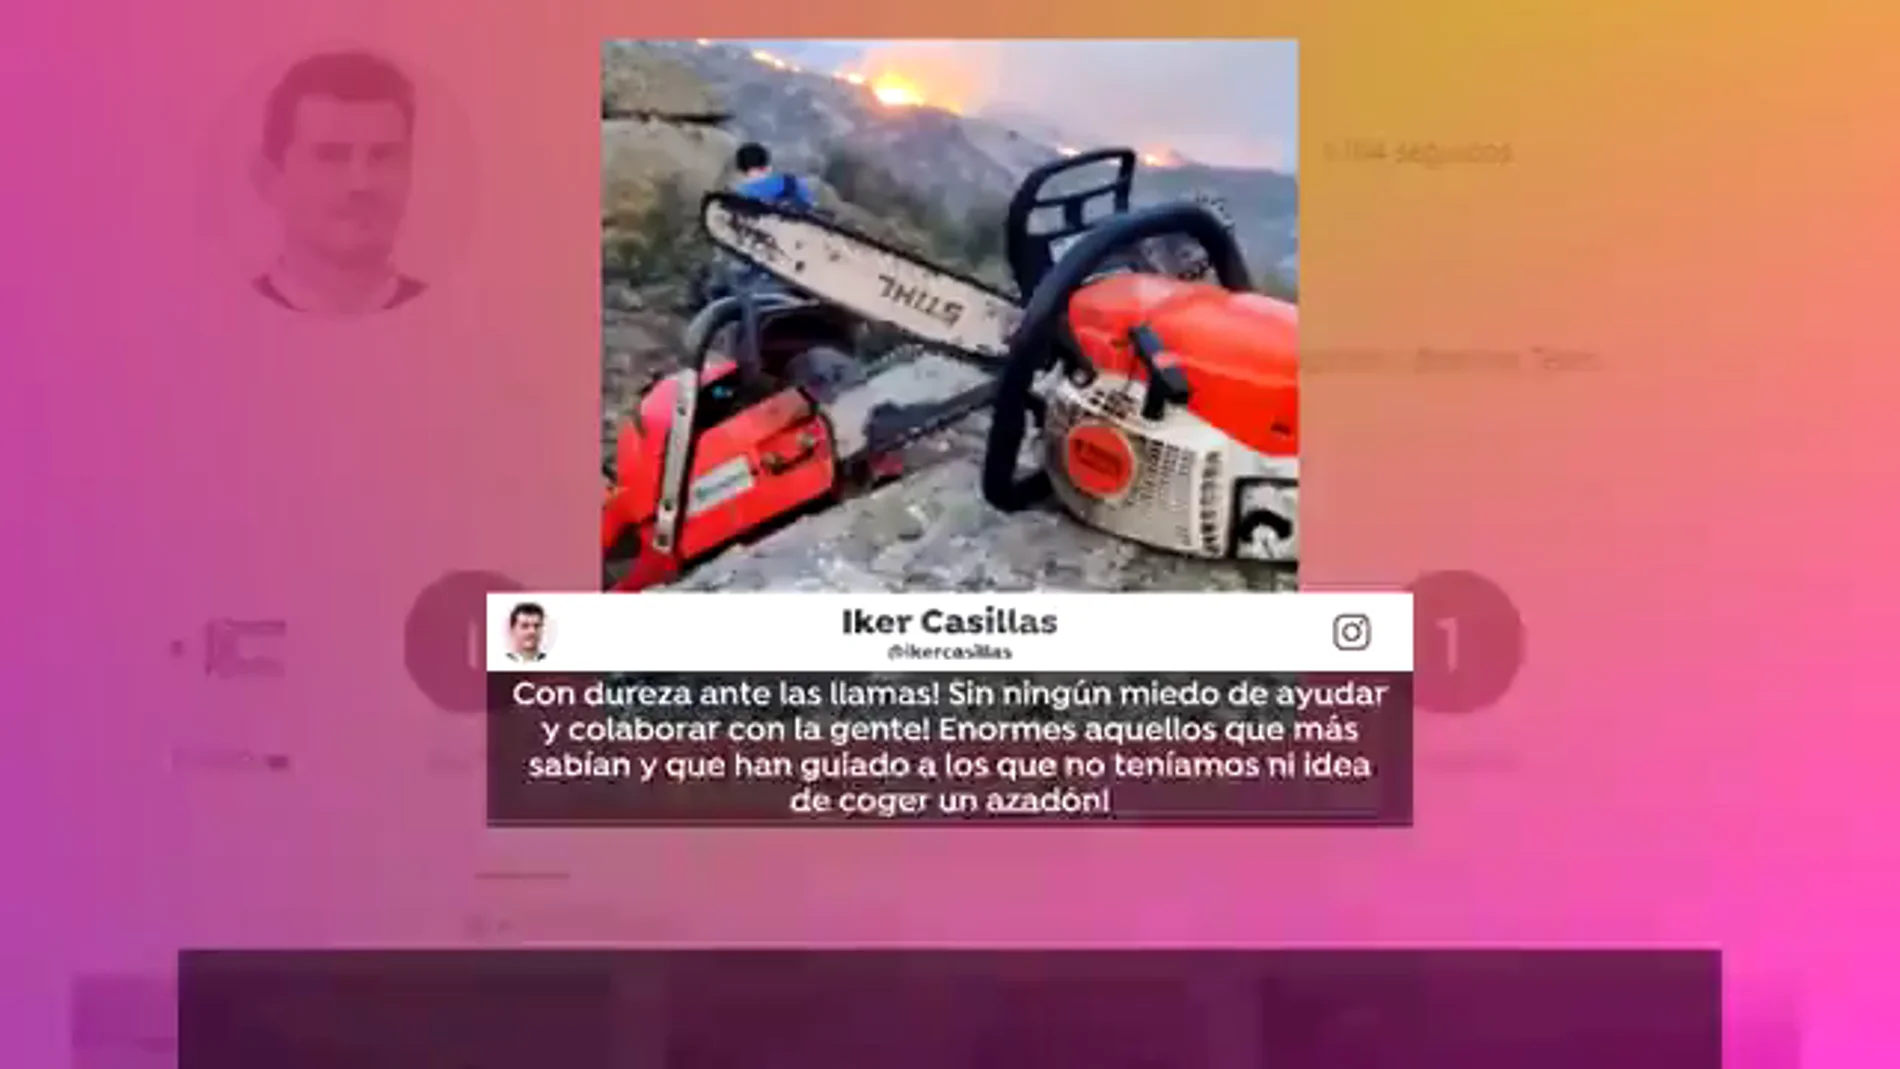 Iker Casillas colabora como voluntario para extinguir los incendios de Navalacruz: "Sin miedo a ayudar"